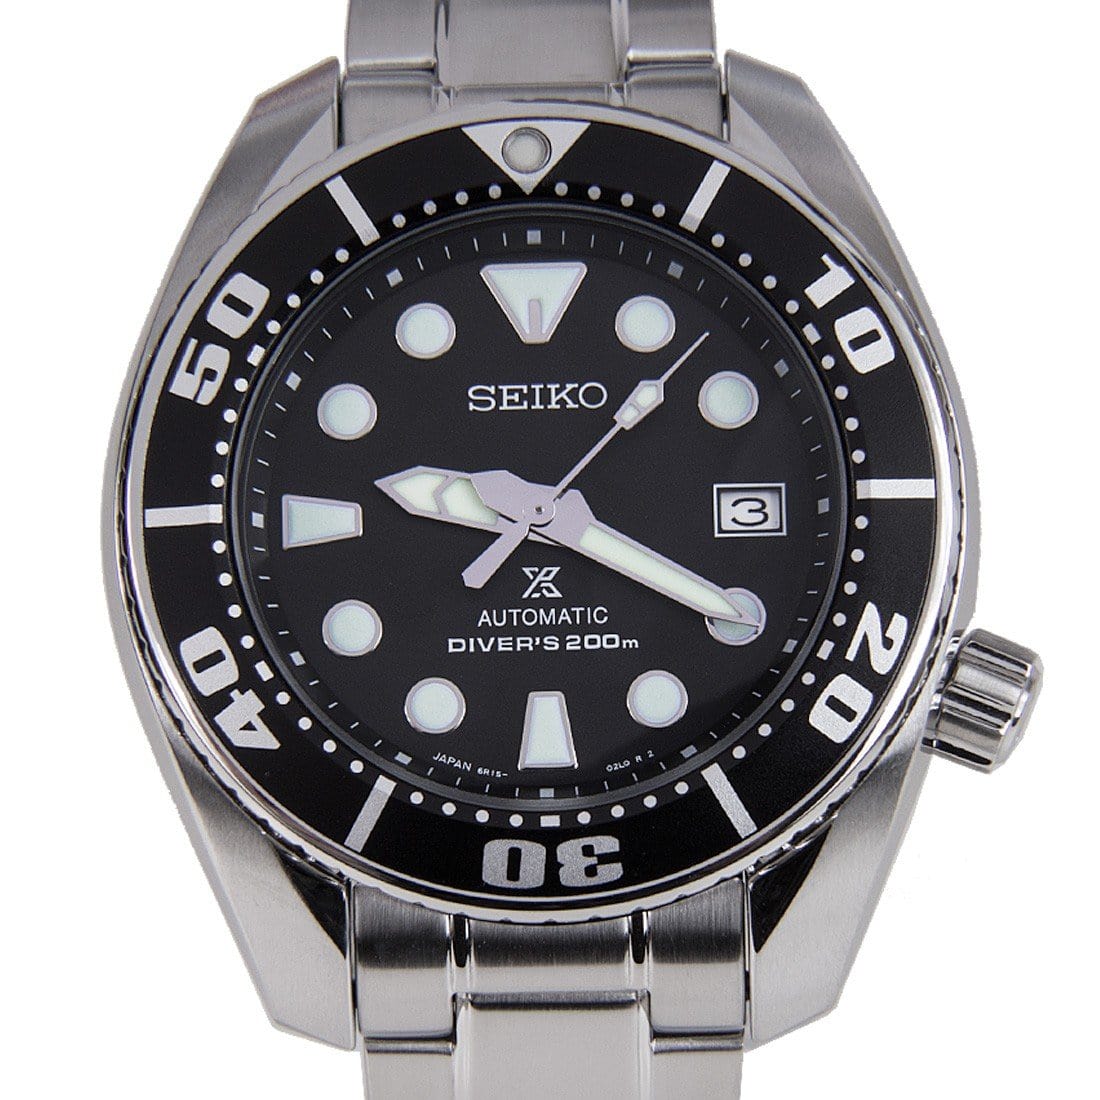 Seiko Japan Prospex SUMO Automatic Dive Watch SBDC031 SBDC031J SBDC031J1